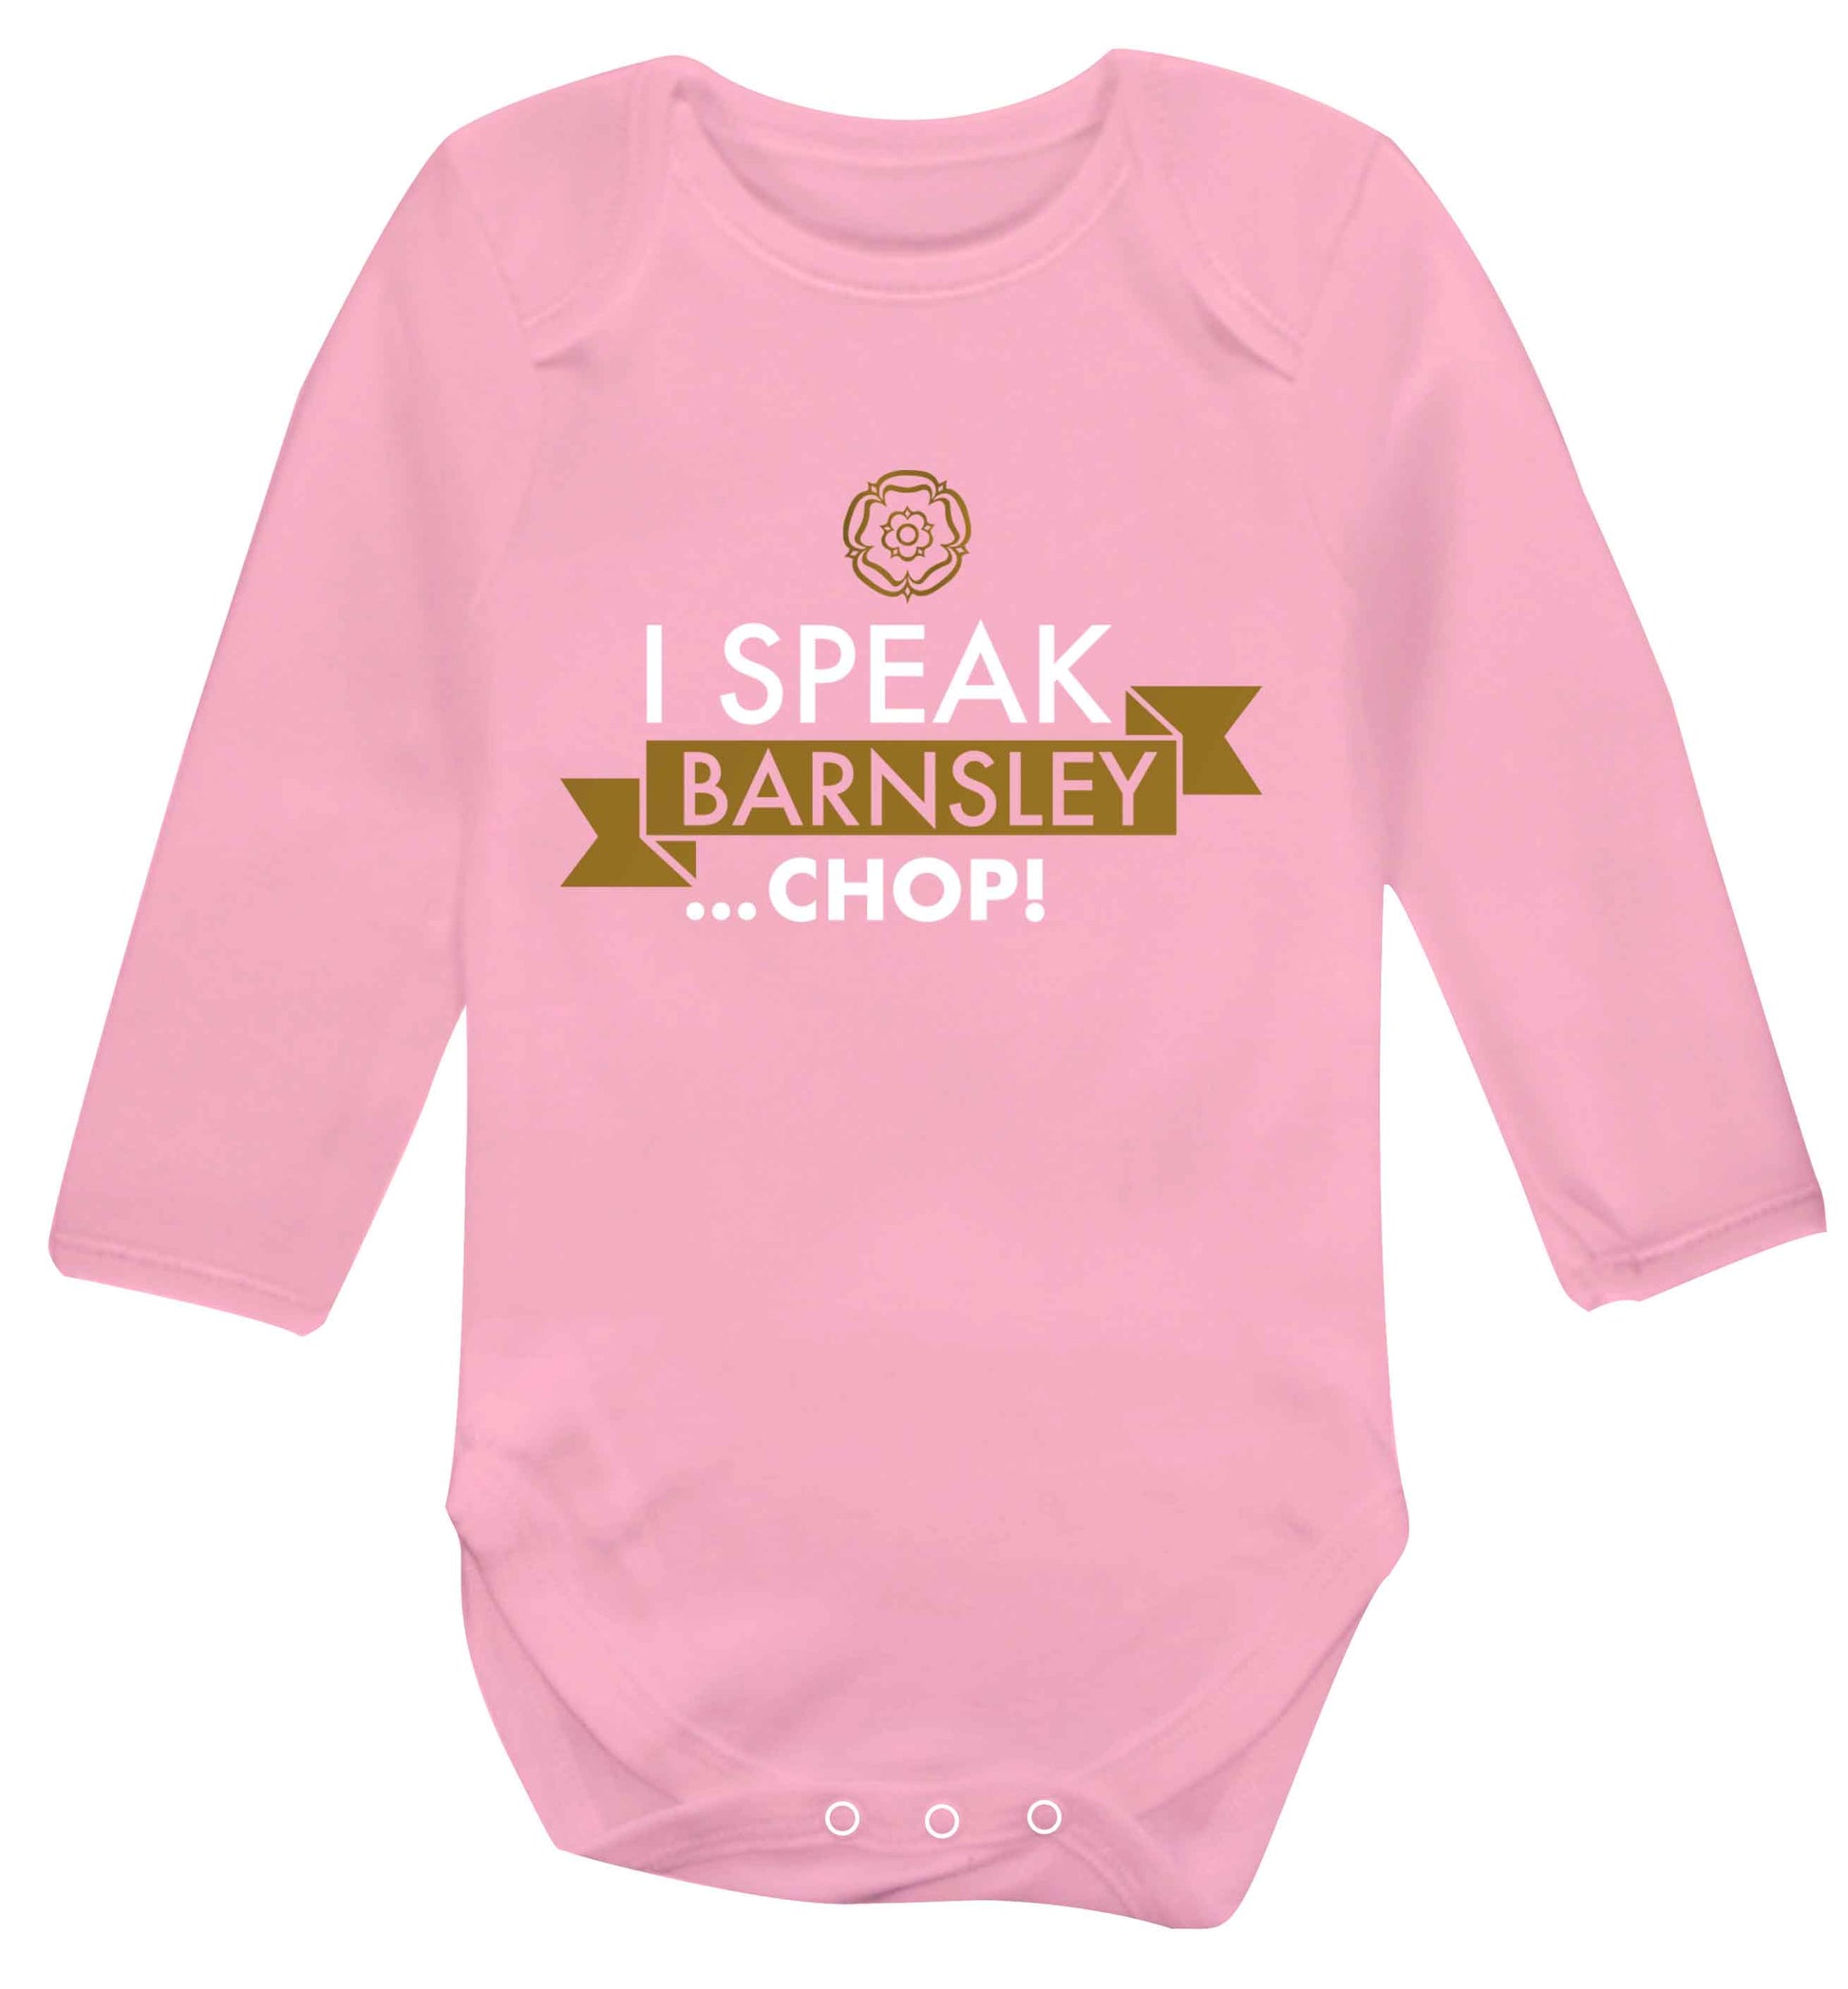 I speak Barnsley...chop! Baby Vest long sleeved pale pink 6-12 months